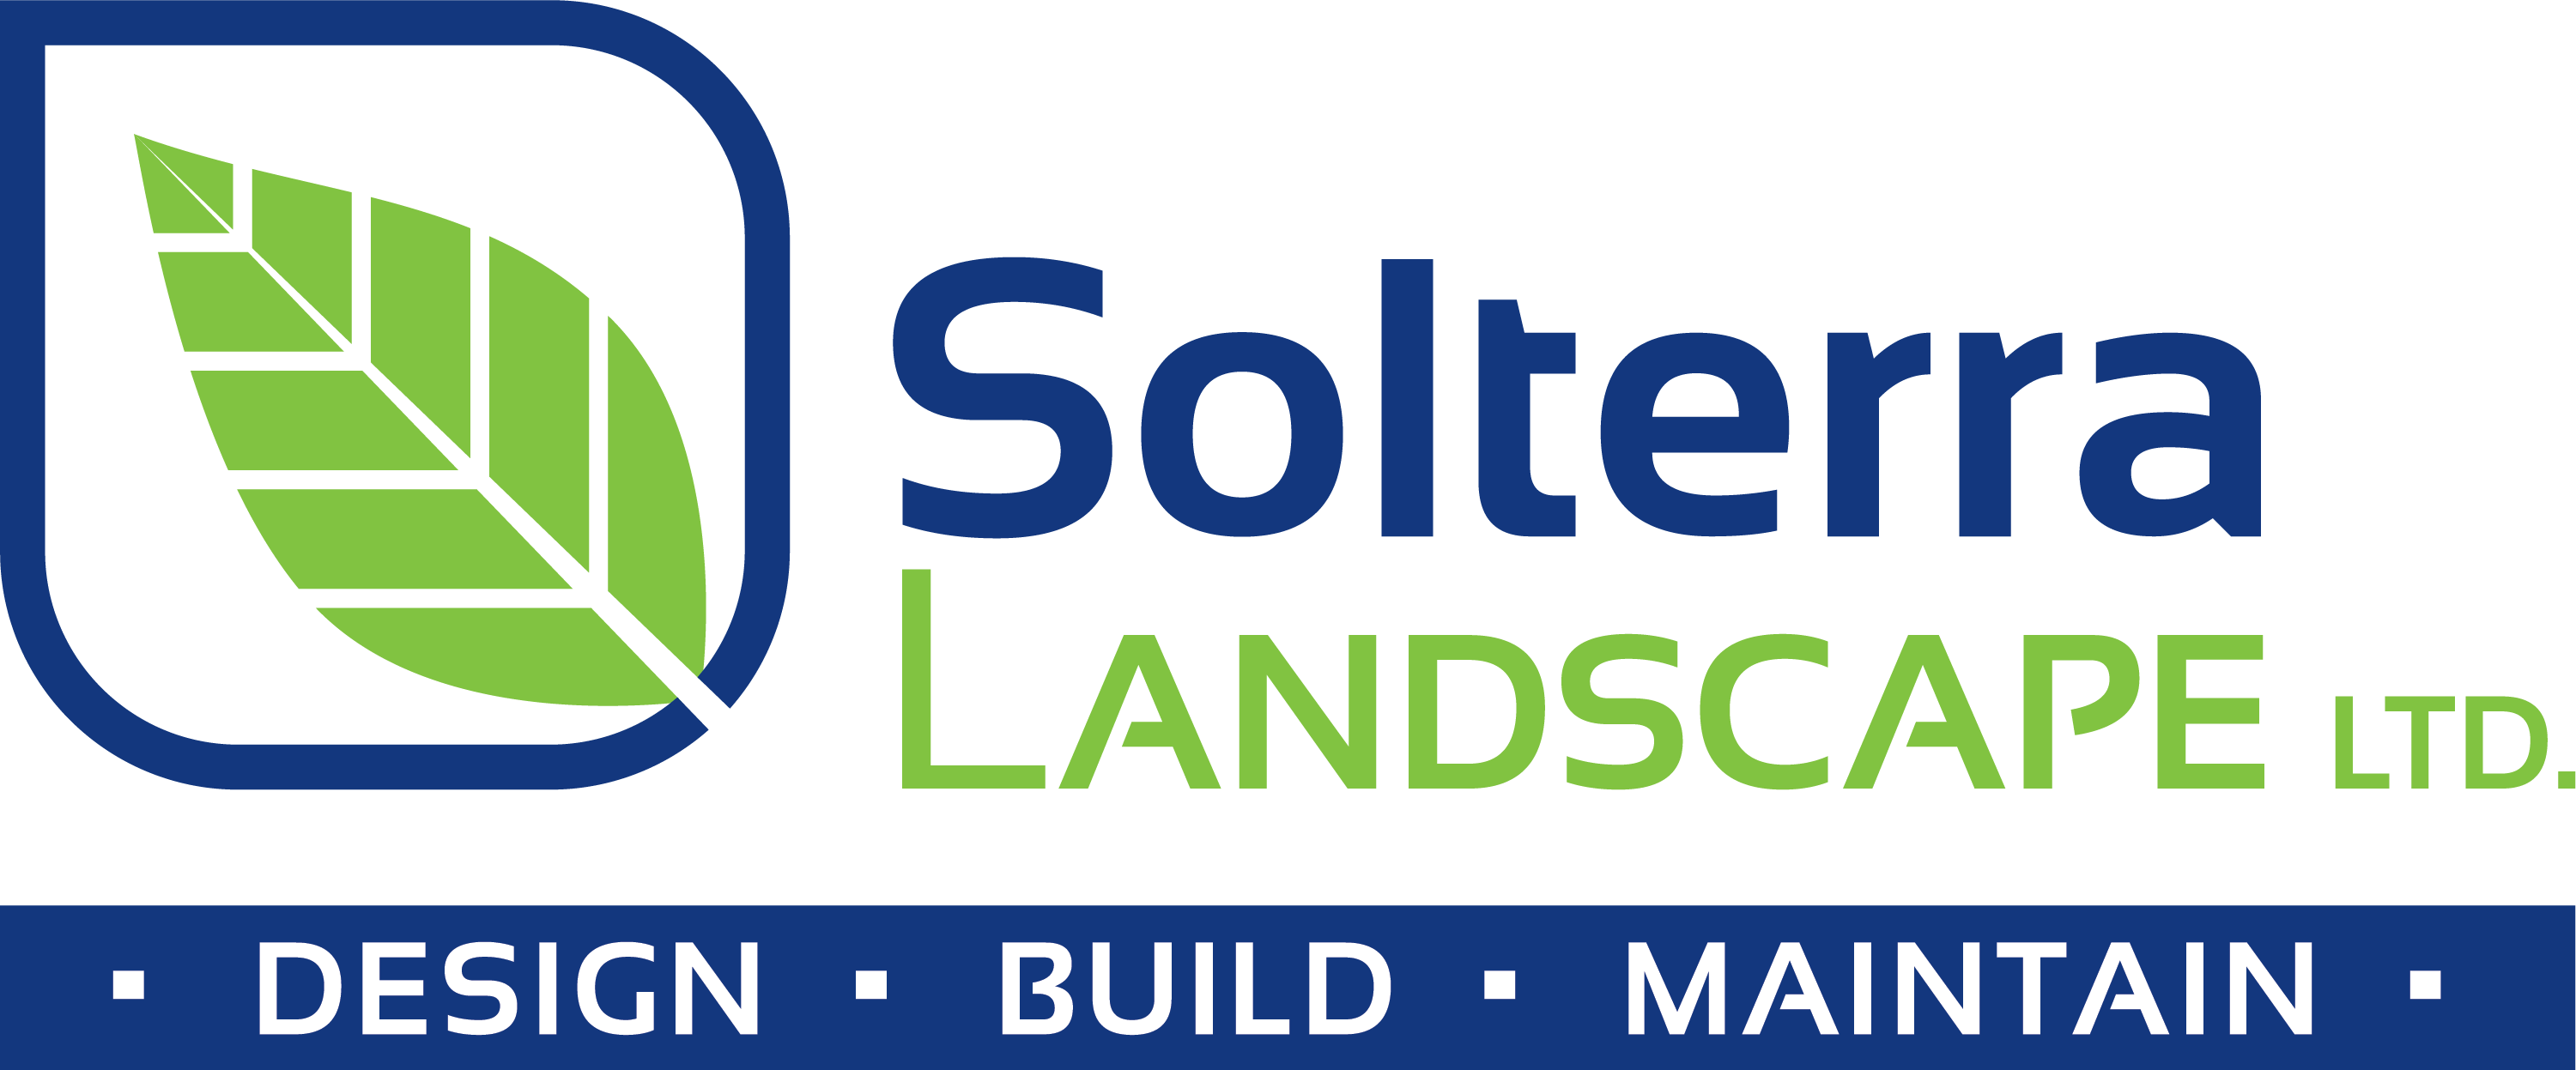 Solterra Landscape Ltd. | Landscaping in Lethbridge